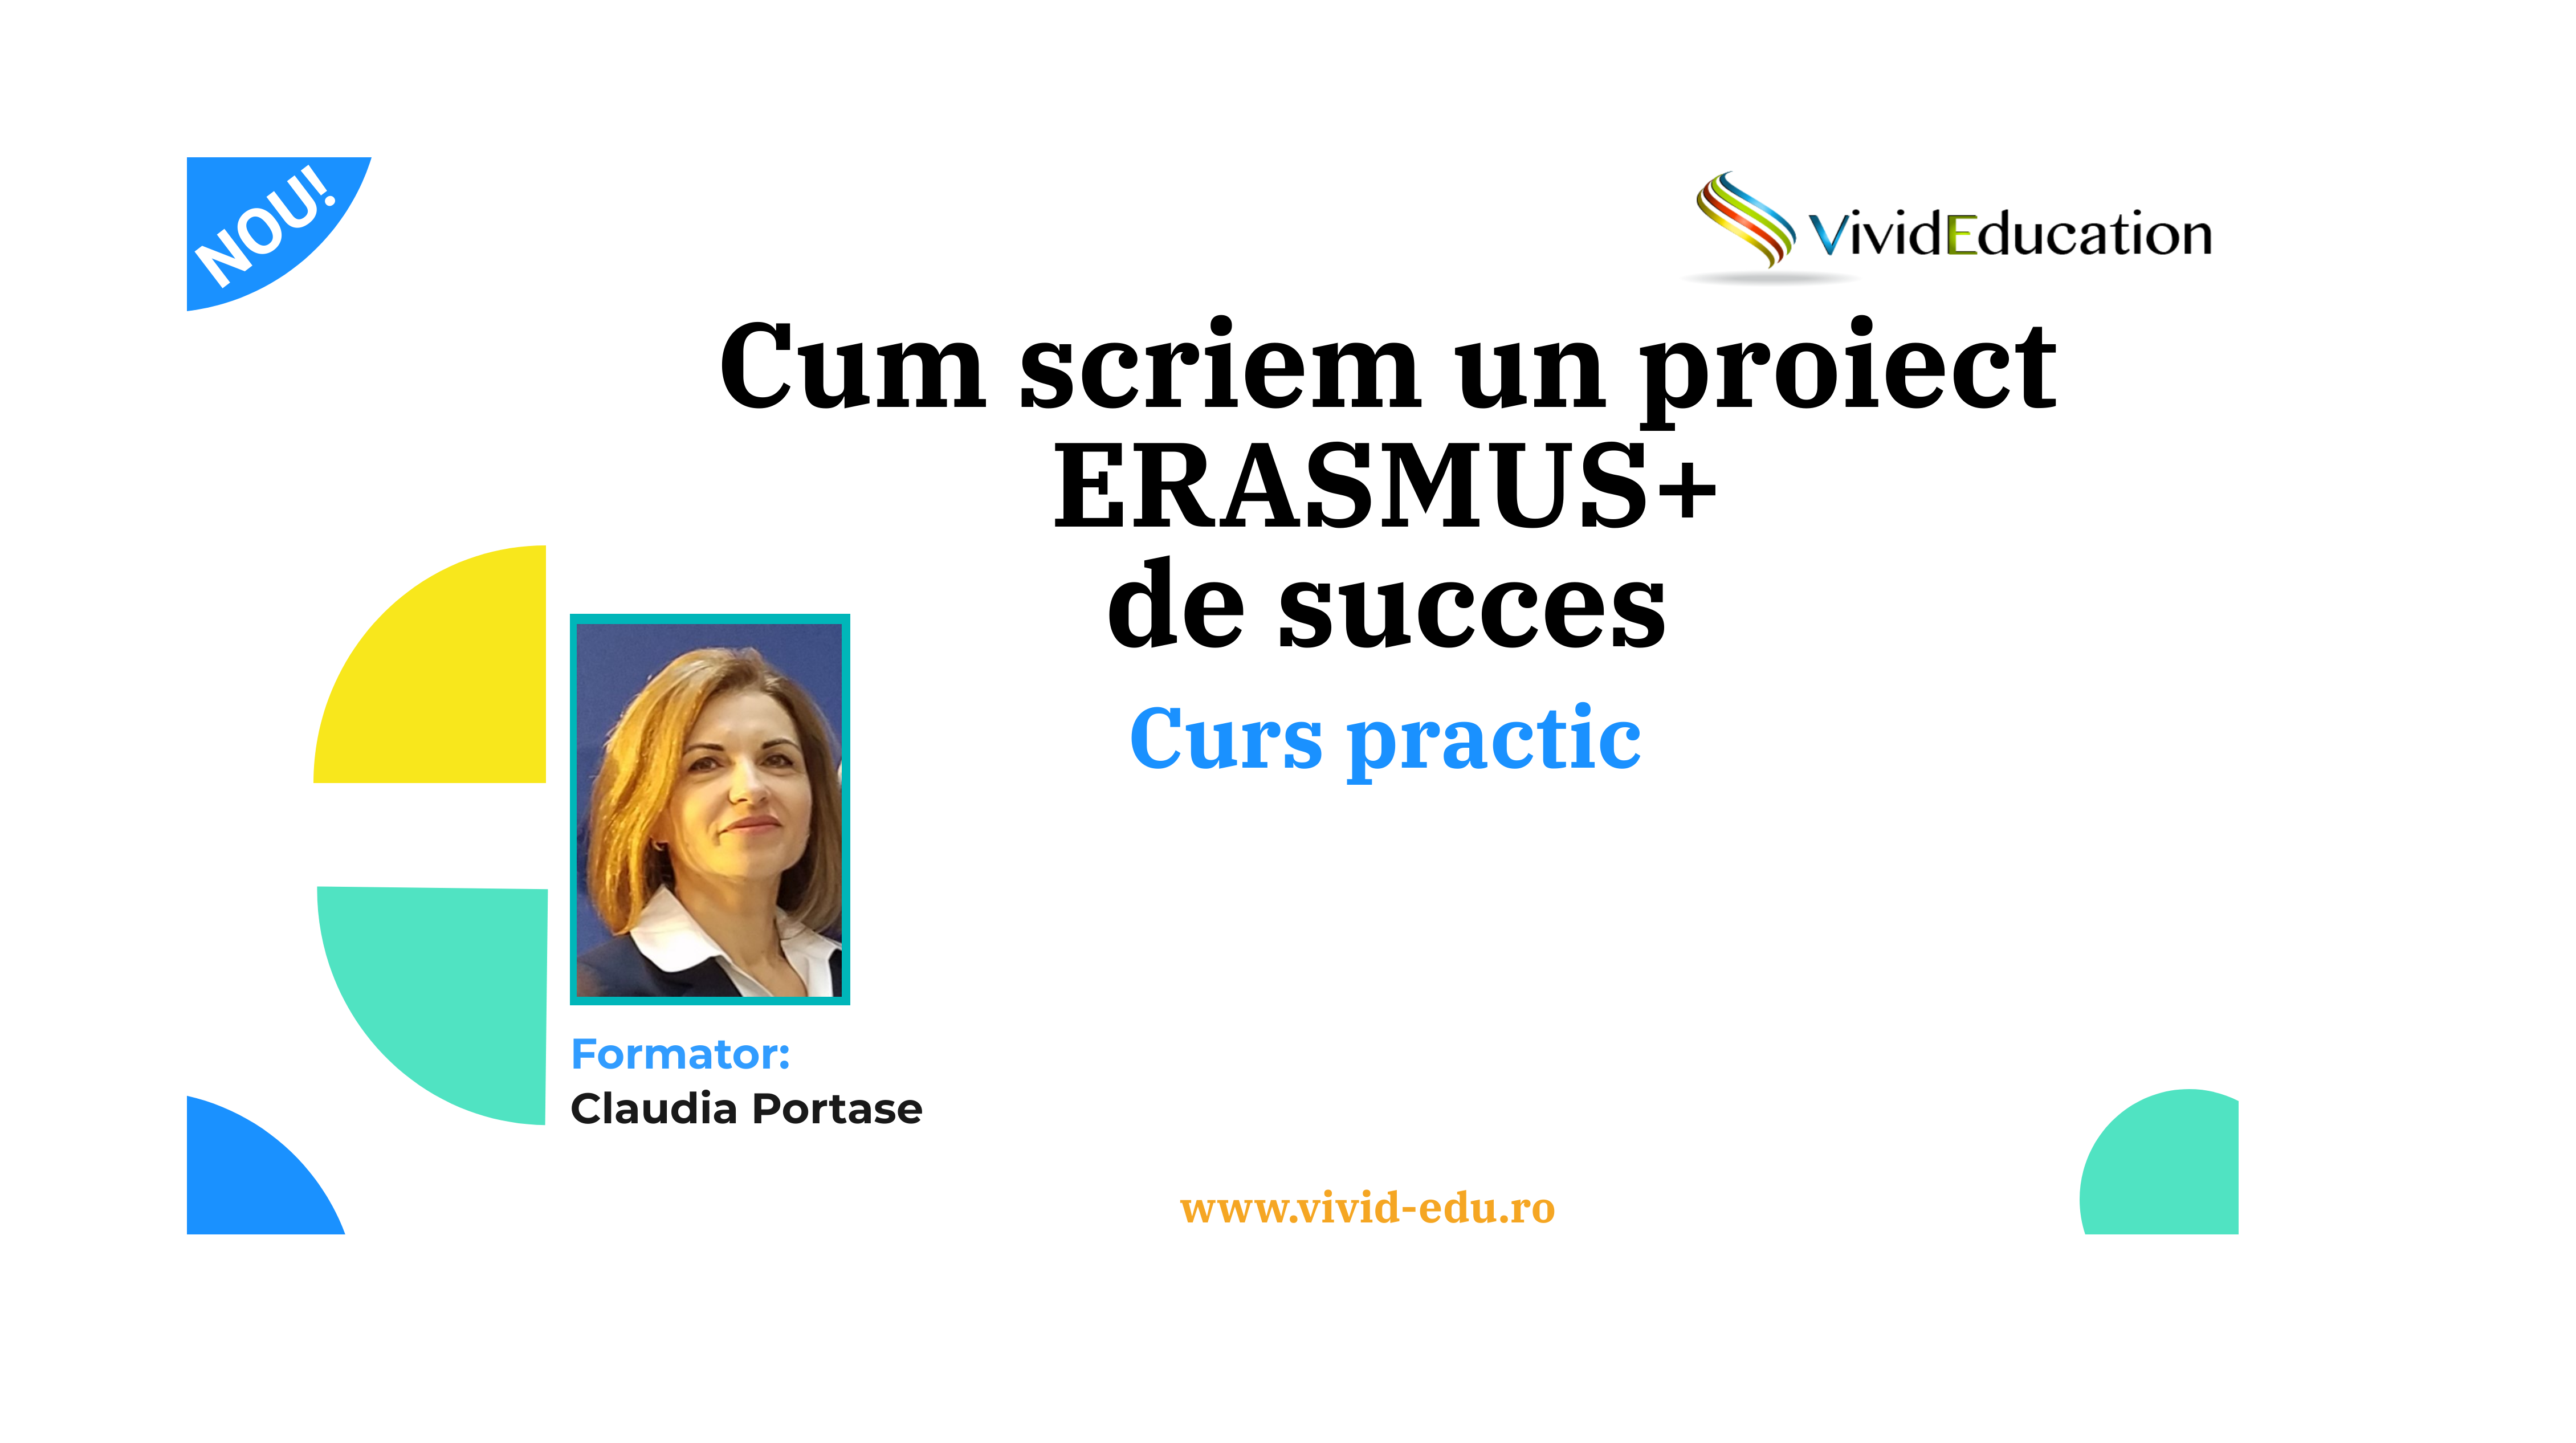 Curs practic ”Cum scriem un proiect Erasmus+ de succes” (10 feb.)